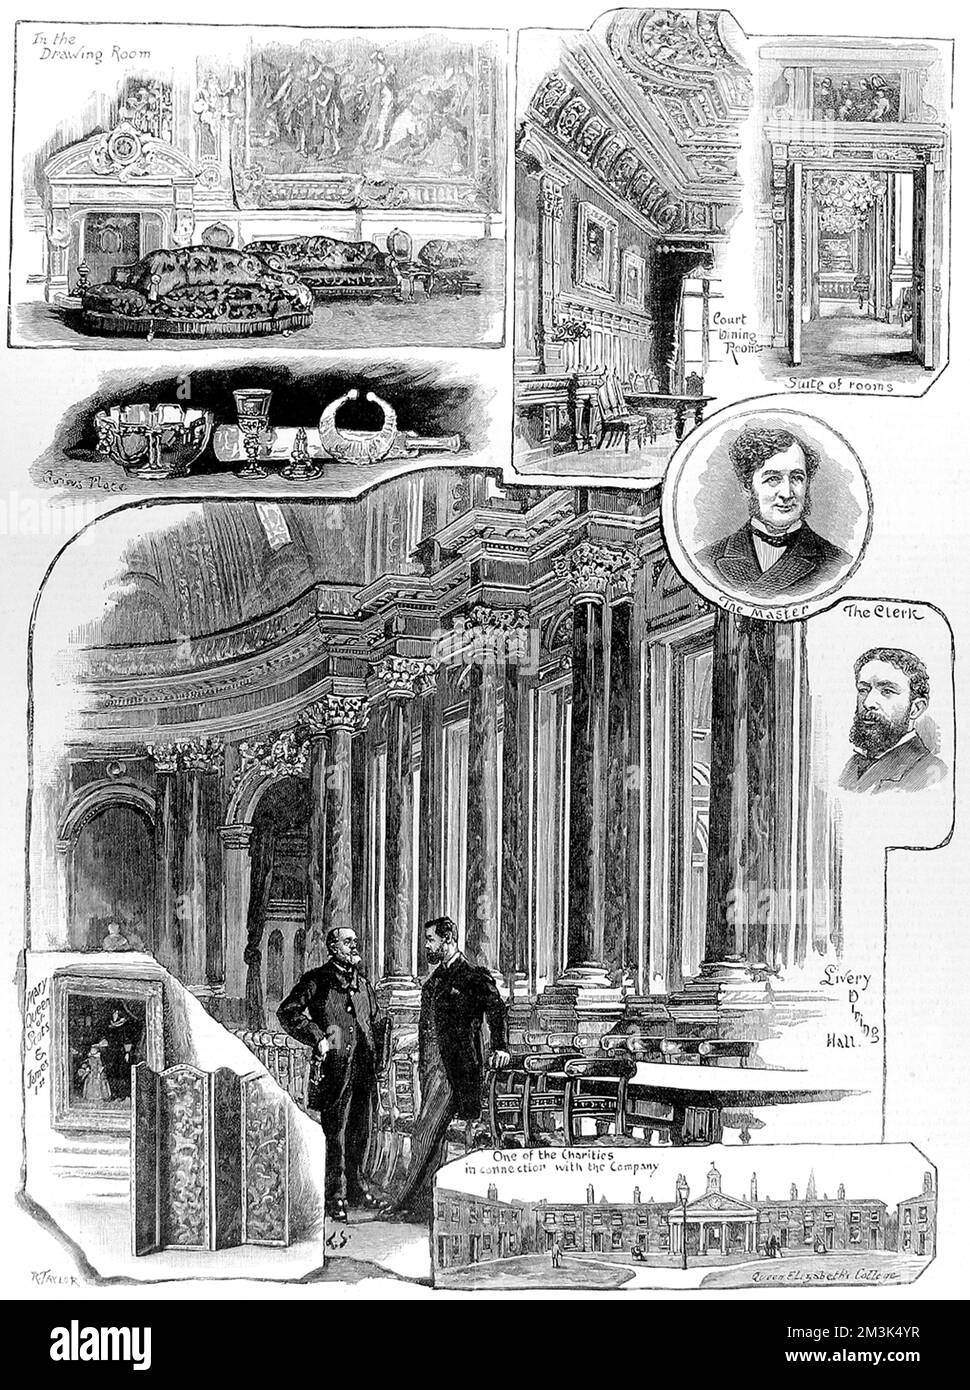 Eine Reihe von Szenen, die mit der Drapers' Company, einer der London City Guilds, in Verbindung stehen. Stockfoto